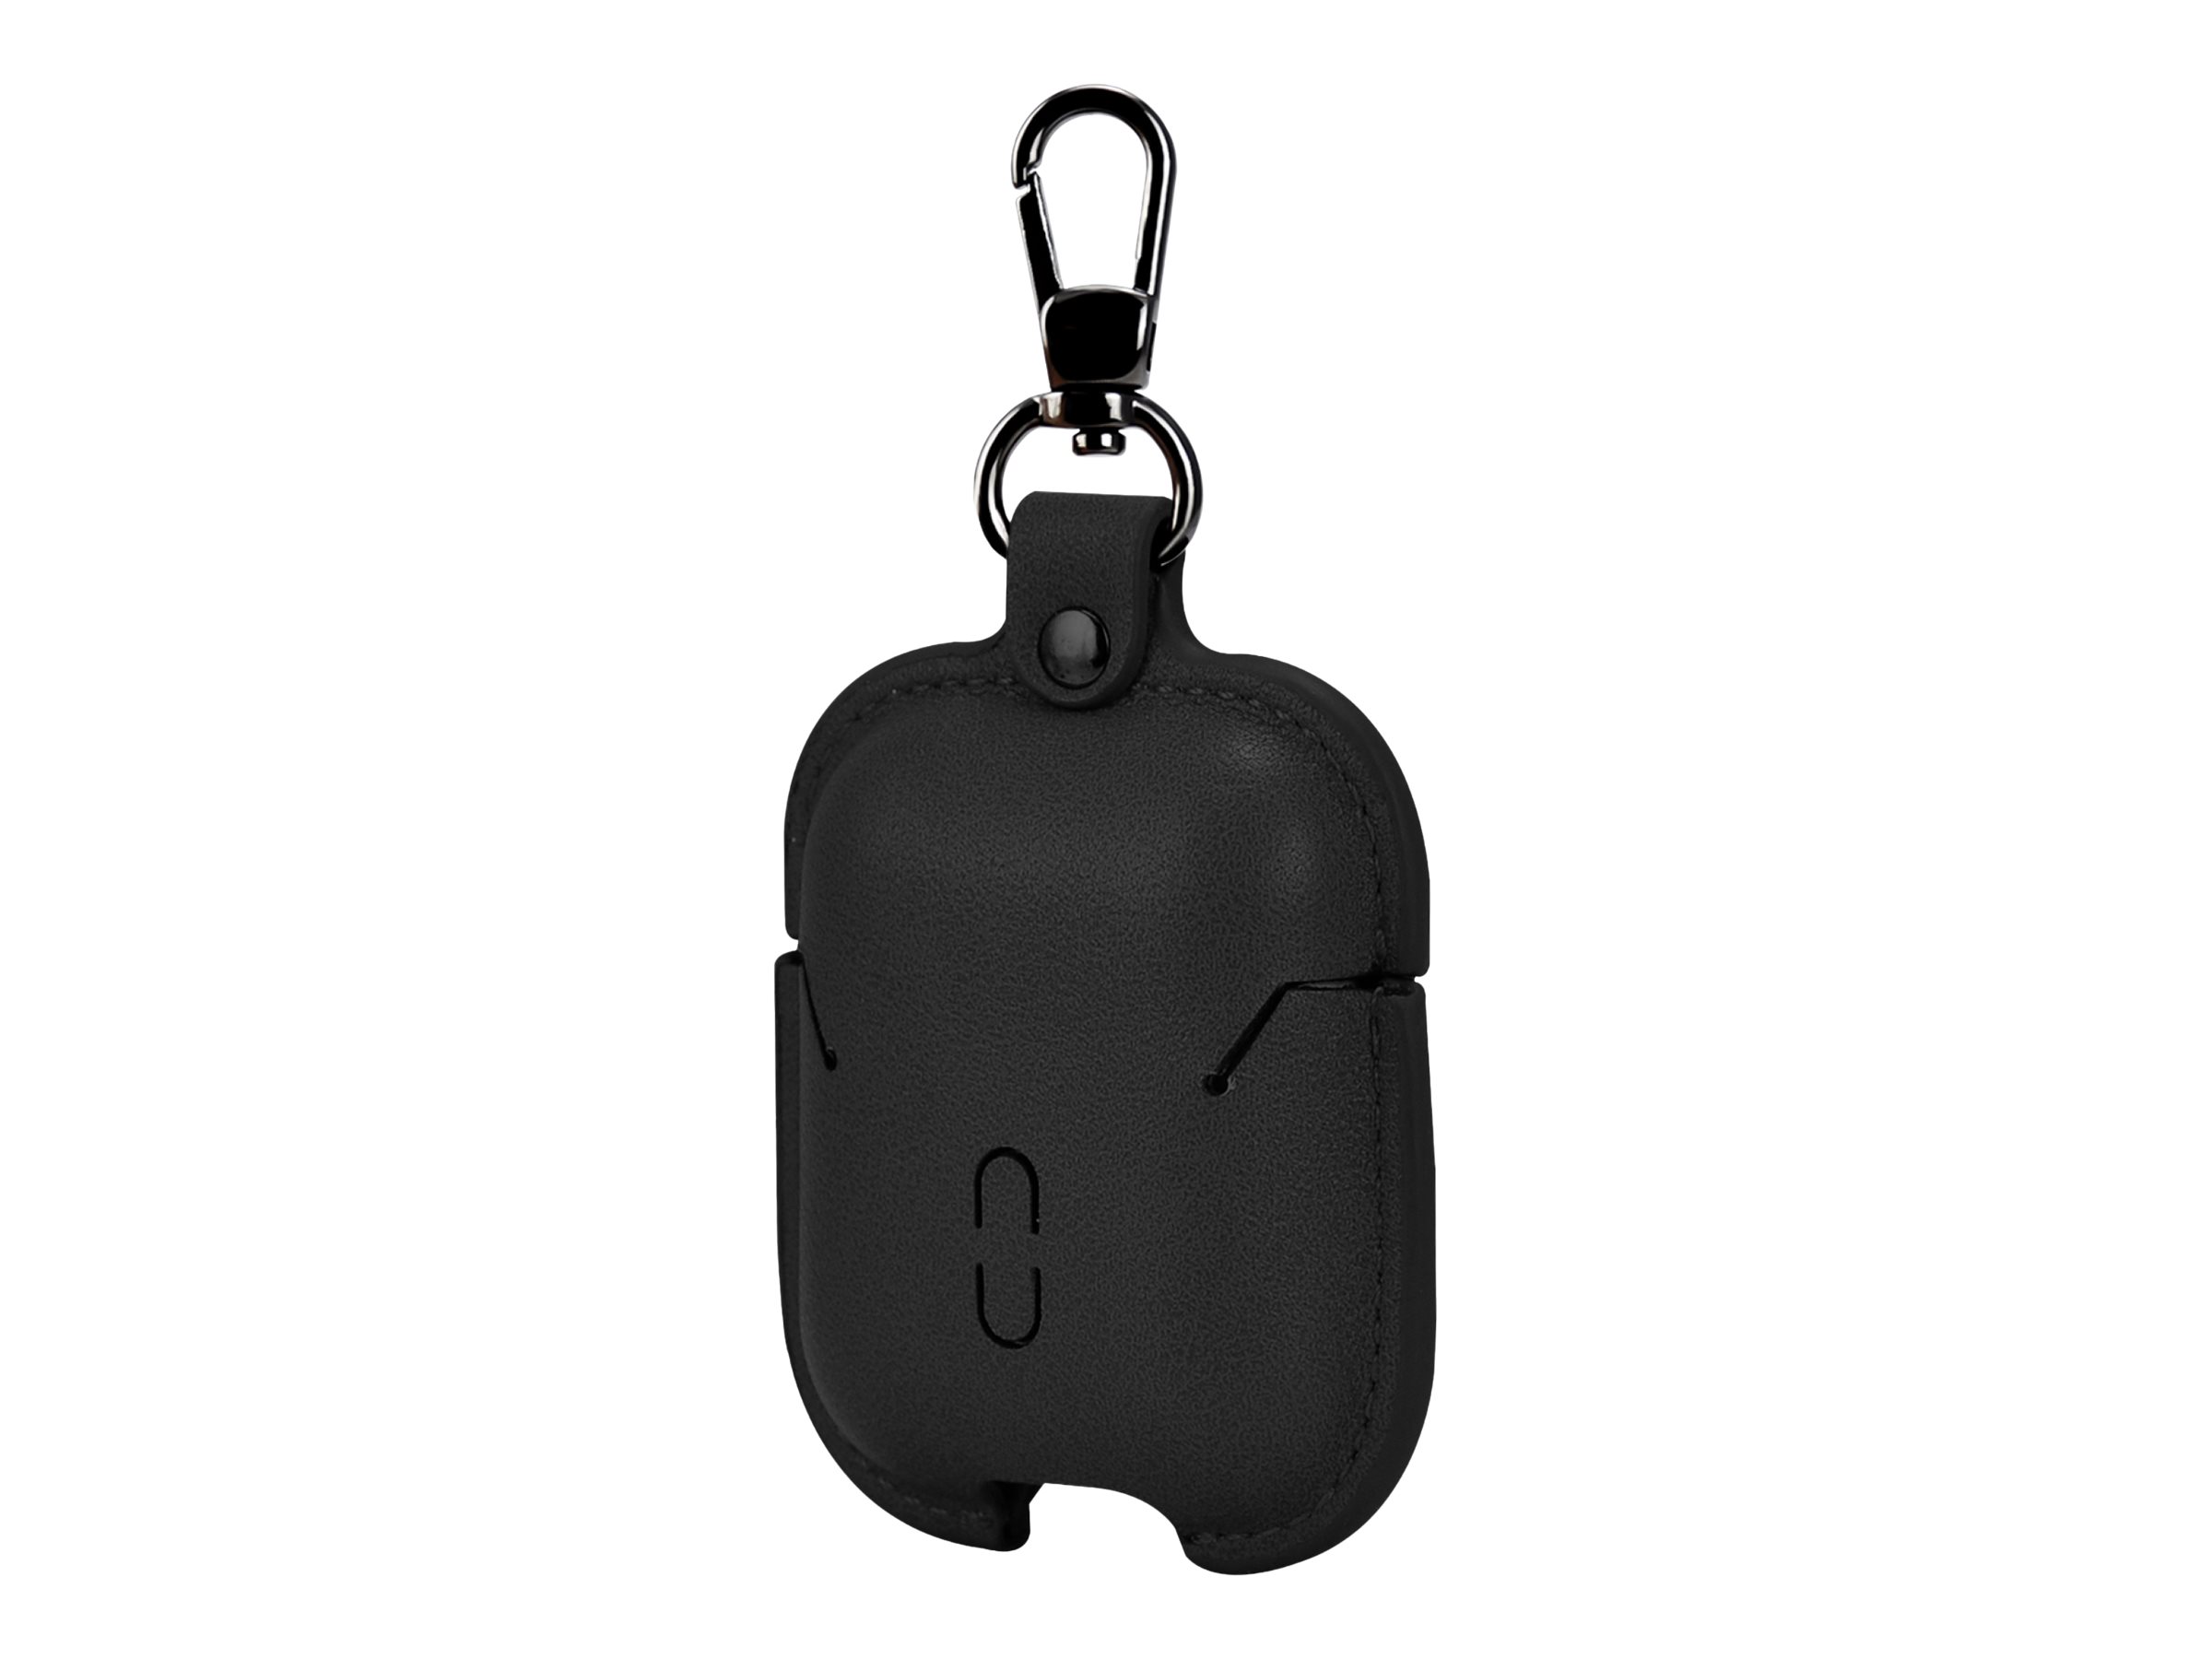 TerraTec Air Box - Tasche für Kopfhöhrer - Polycarbonat - schwarzes Leder - für Apple AirPods (1. Generation, 2. Generation)